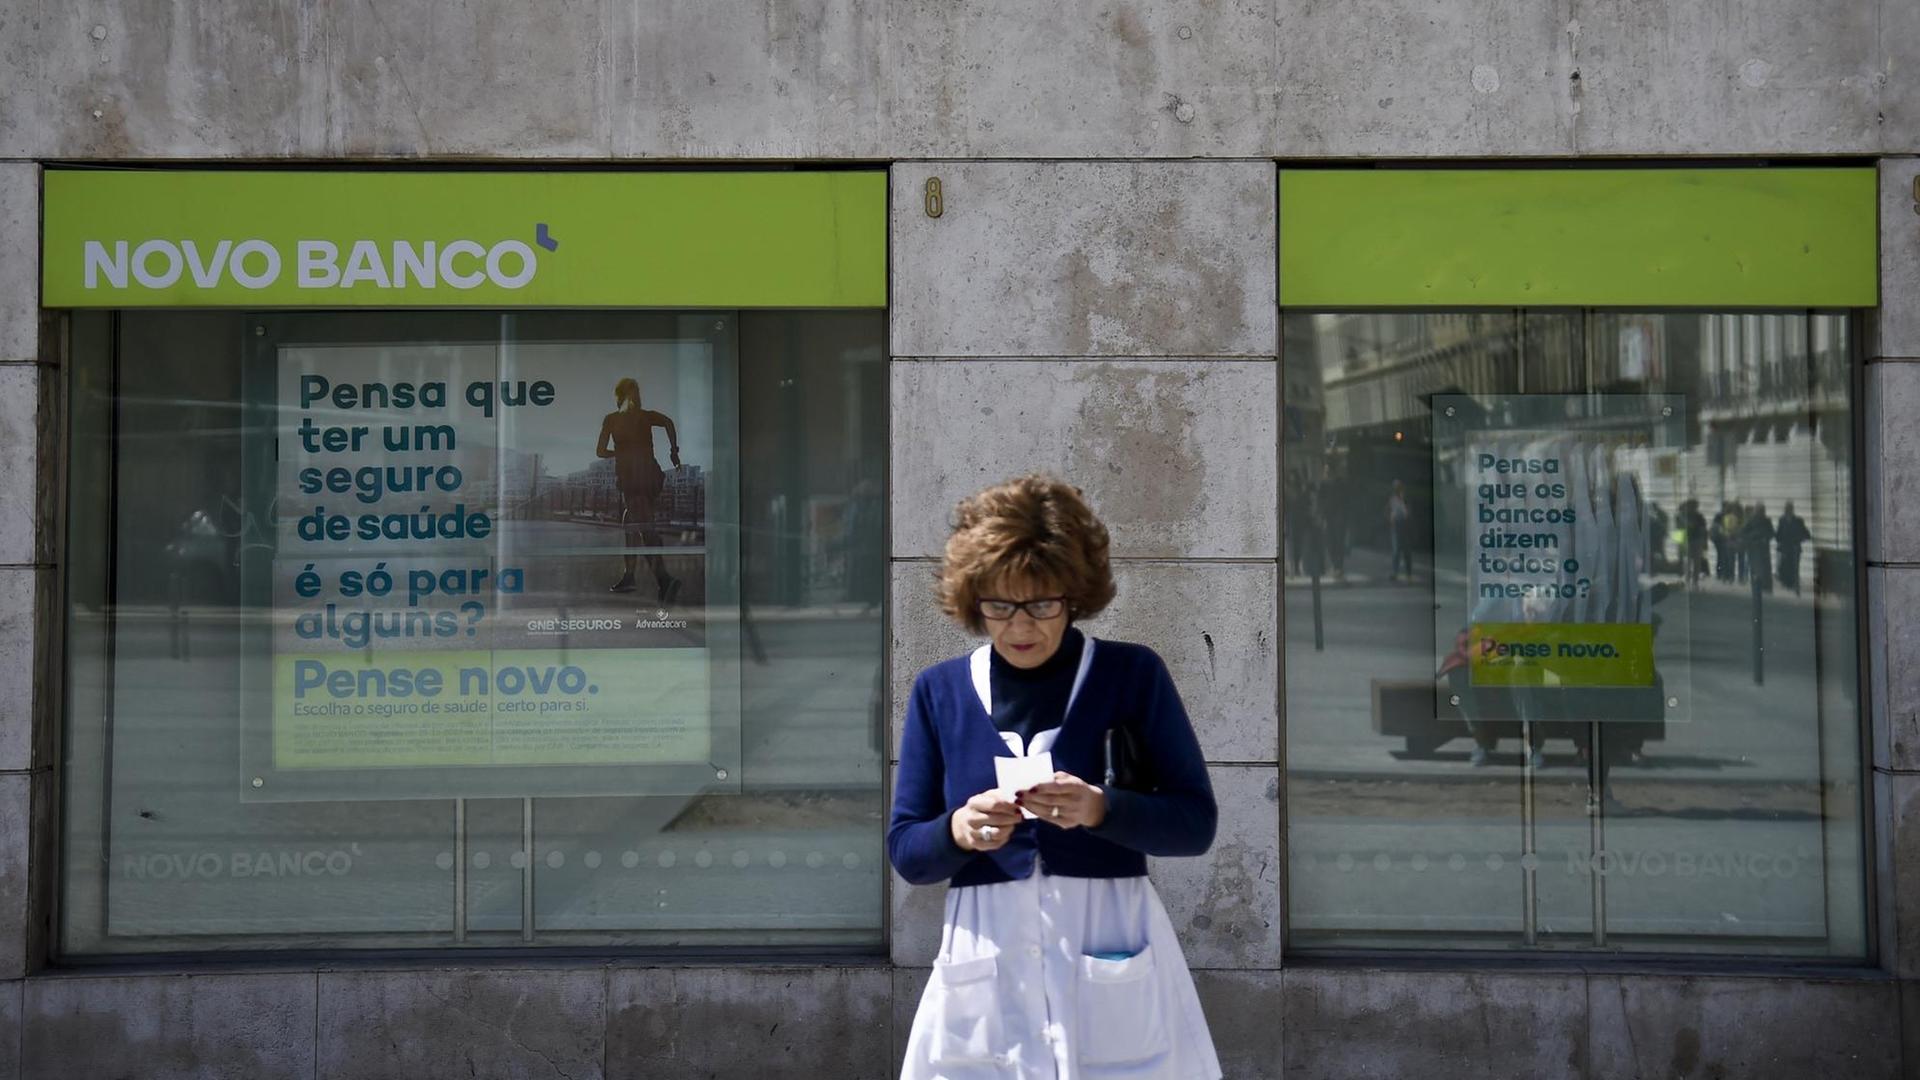 Eine Zweigstelle der Novo Banco in Lissabon am 31. März 2017, mit Werbeslogans im Fenster. Im Vordergrund eine Frau.